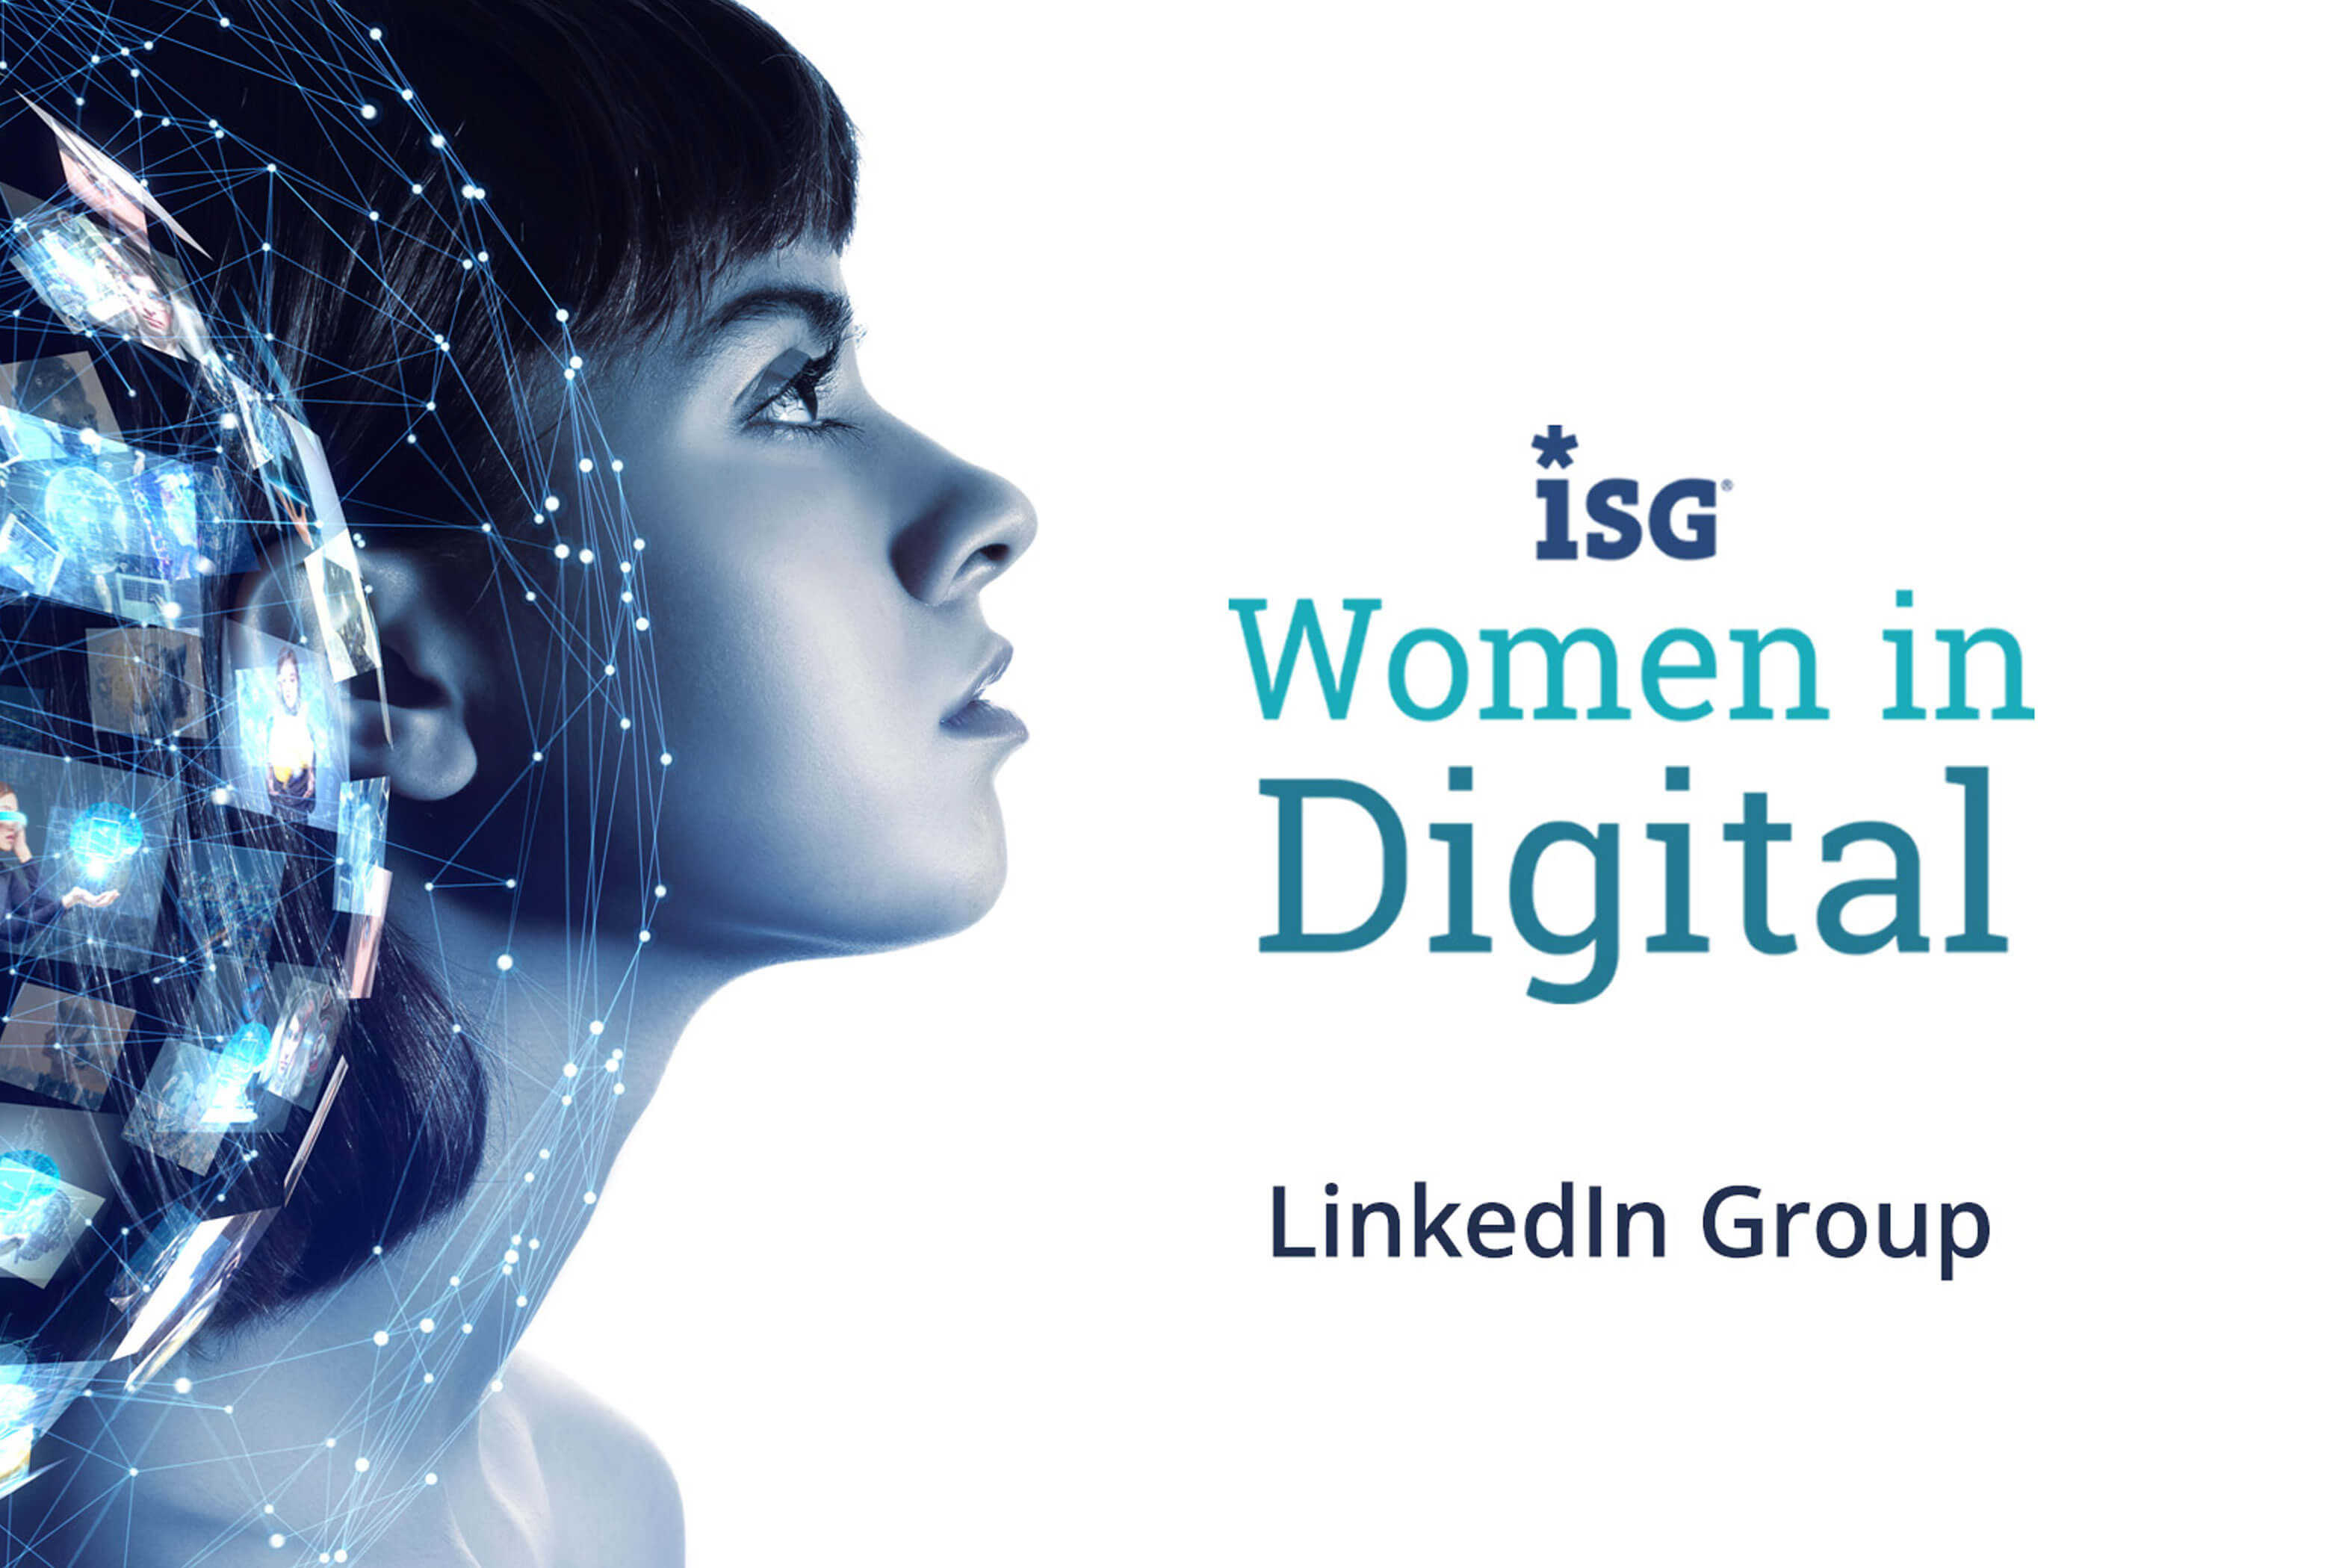 ISG Women in Digital LinkedIn Group